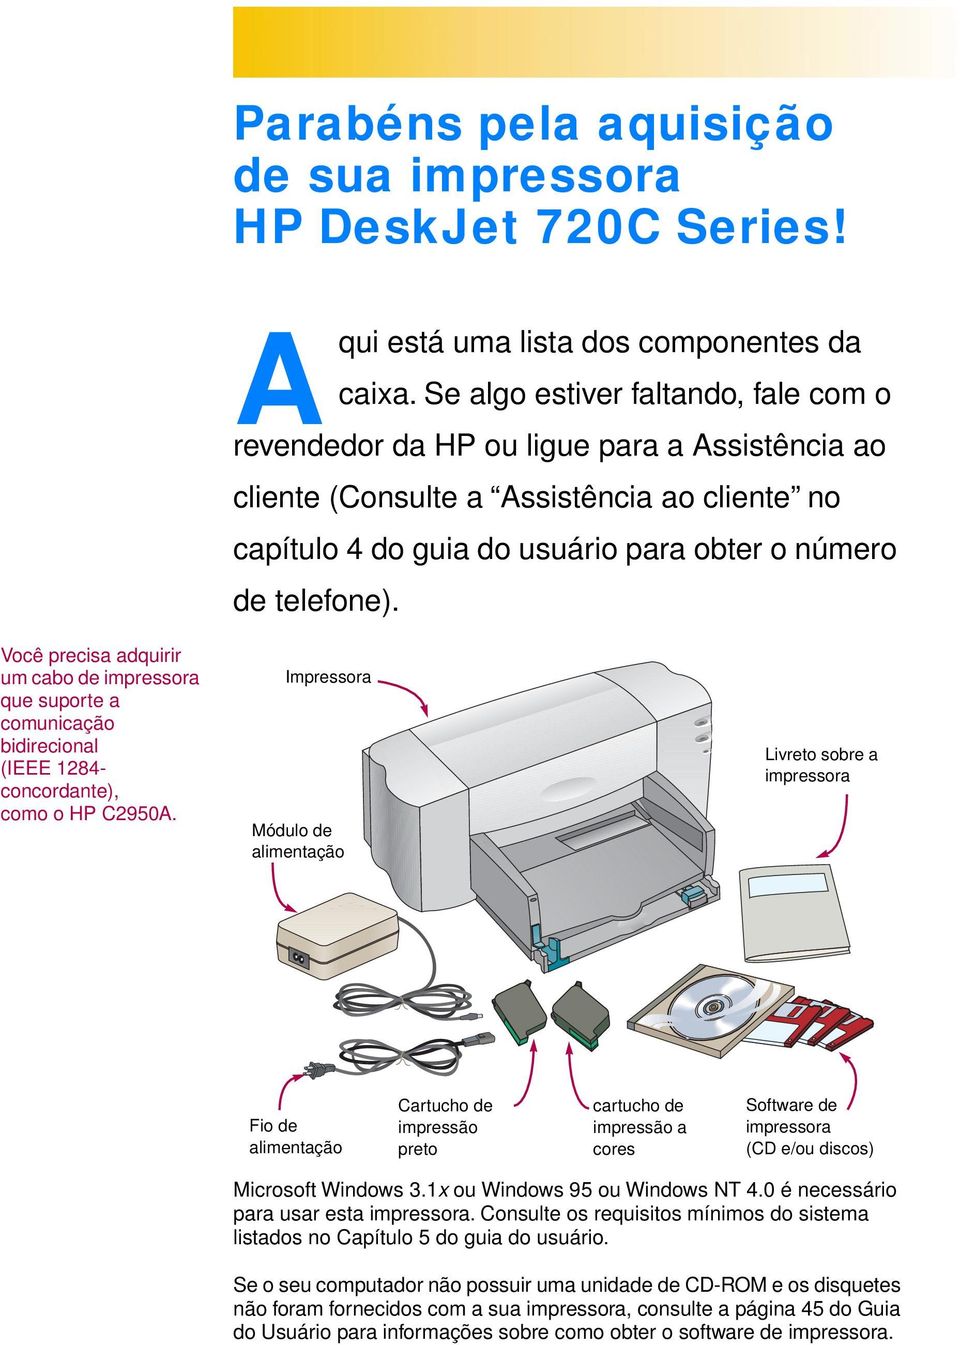 Você precisa adquirir um cabo de impressora que suporte a comunicação bidirecional (IEEE 1284- concordante), como o HP C2950A.